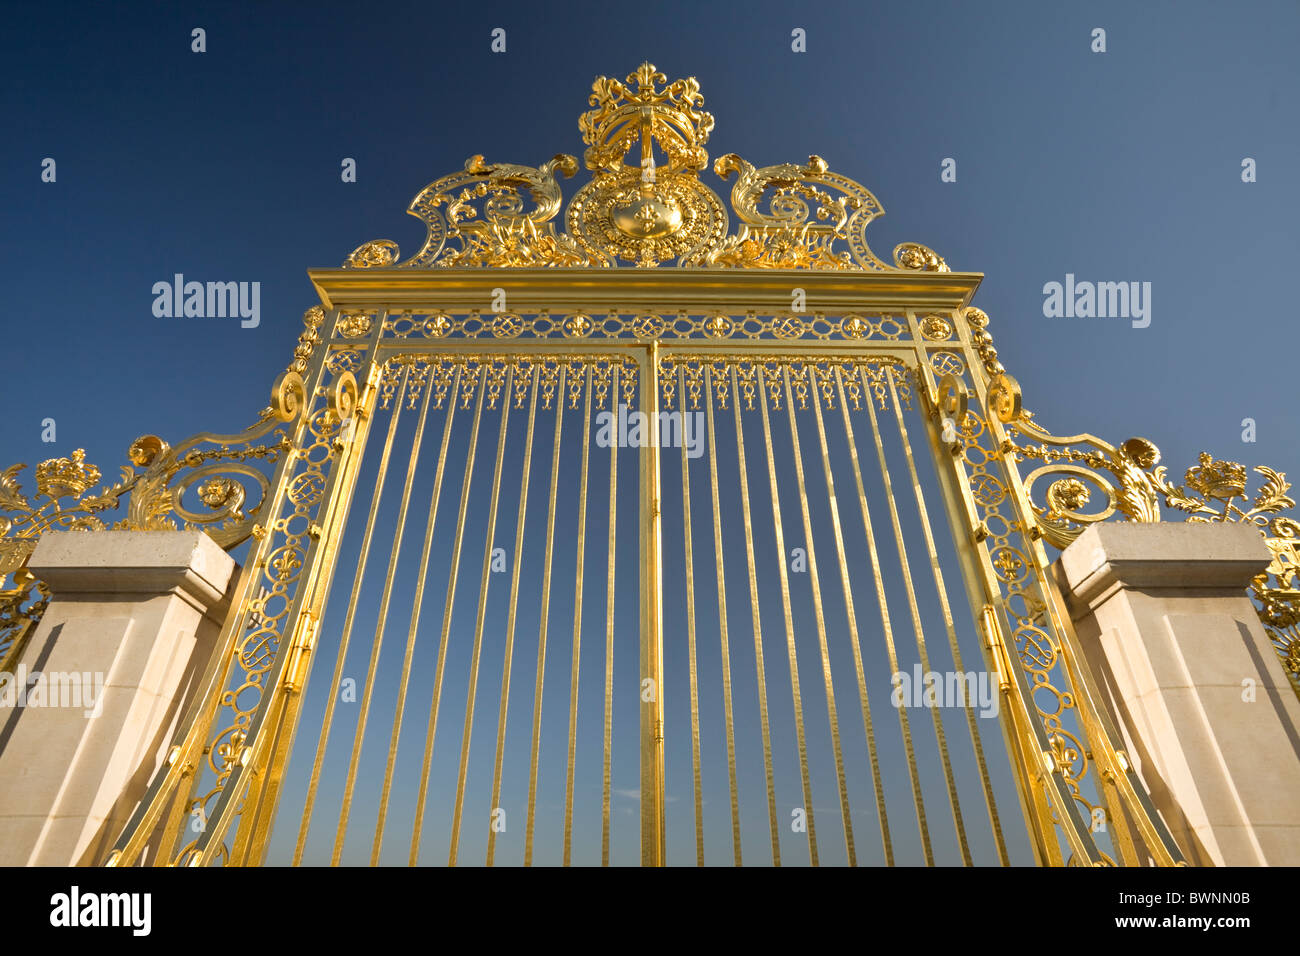 The Palace of Versailles royal golden gate (Versailles - France). La grille royale dorée à l'or fin du Château de Versailles Stock Photo